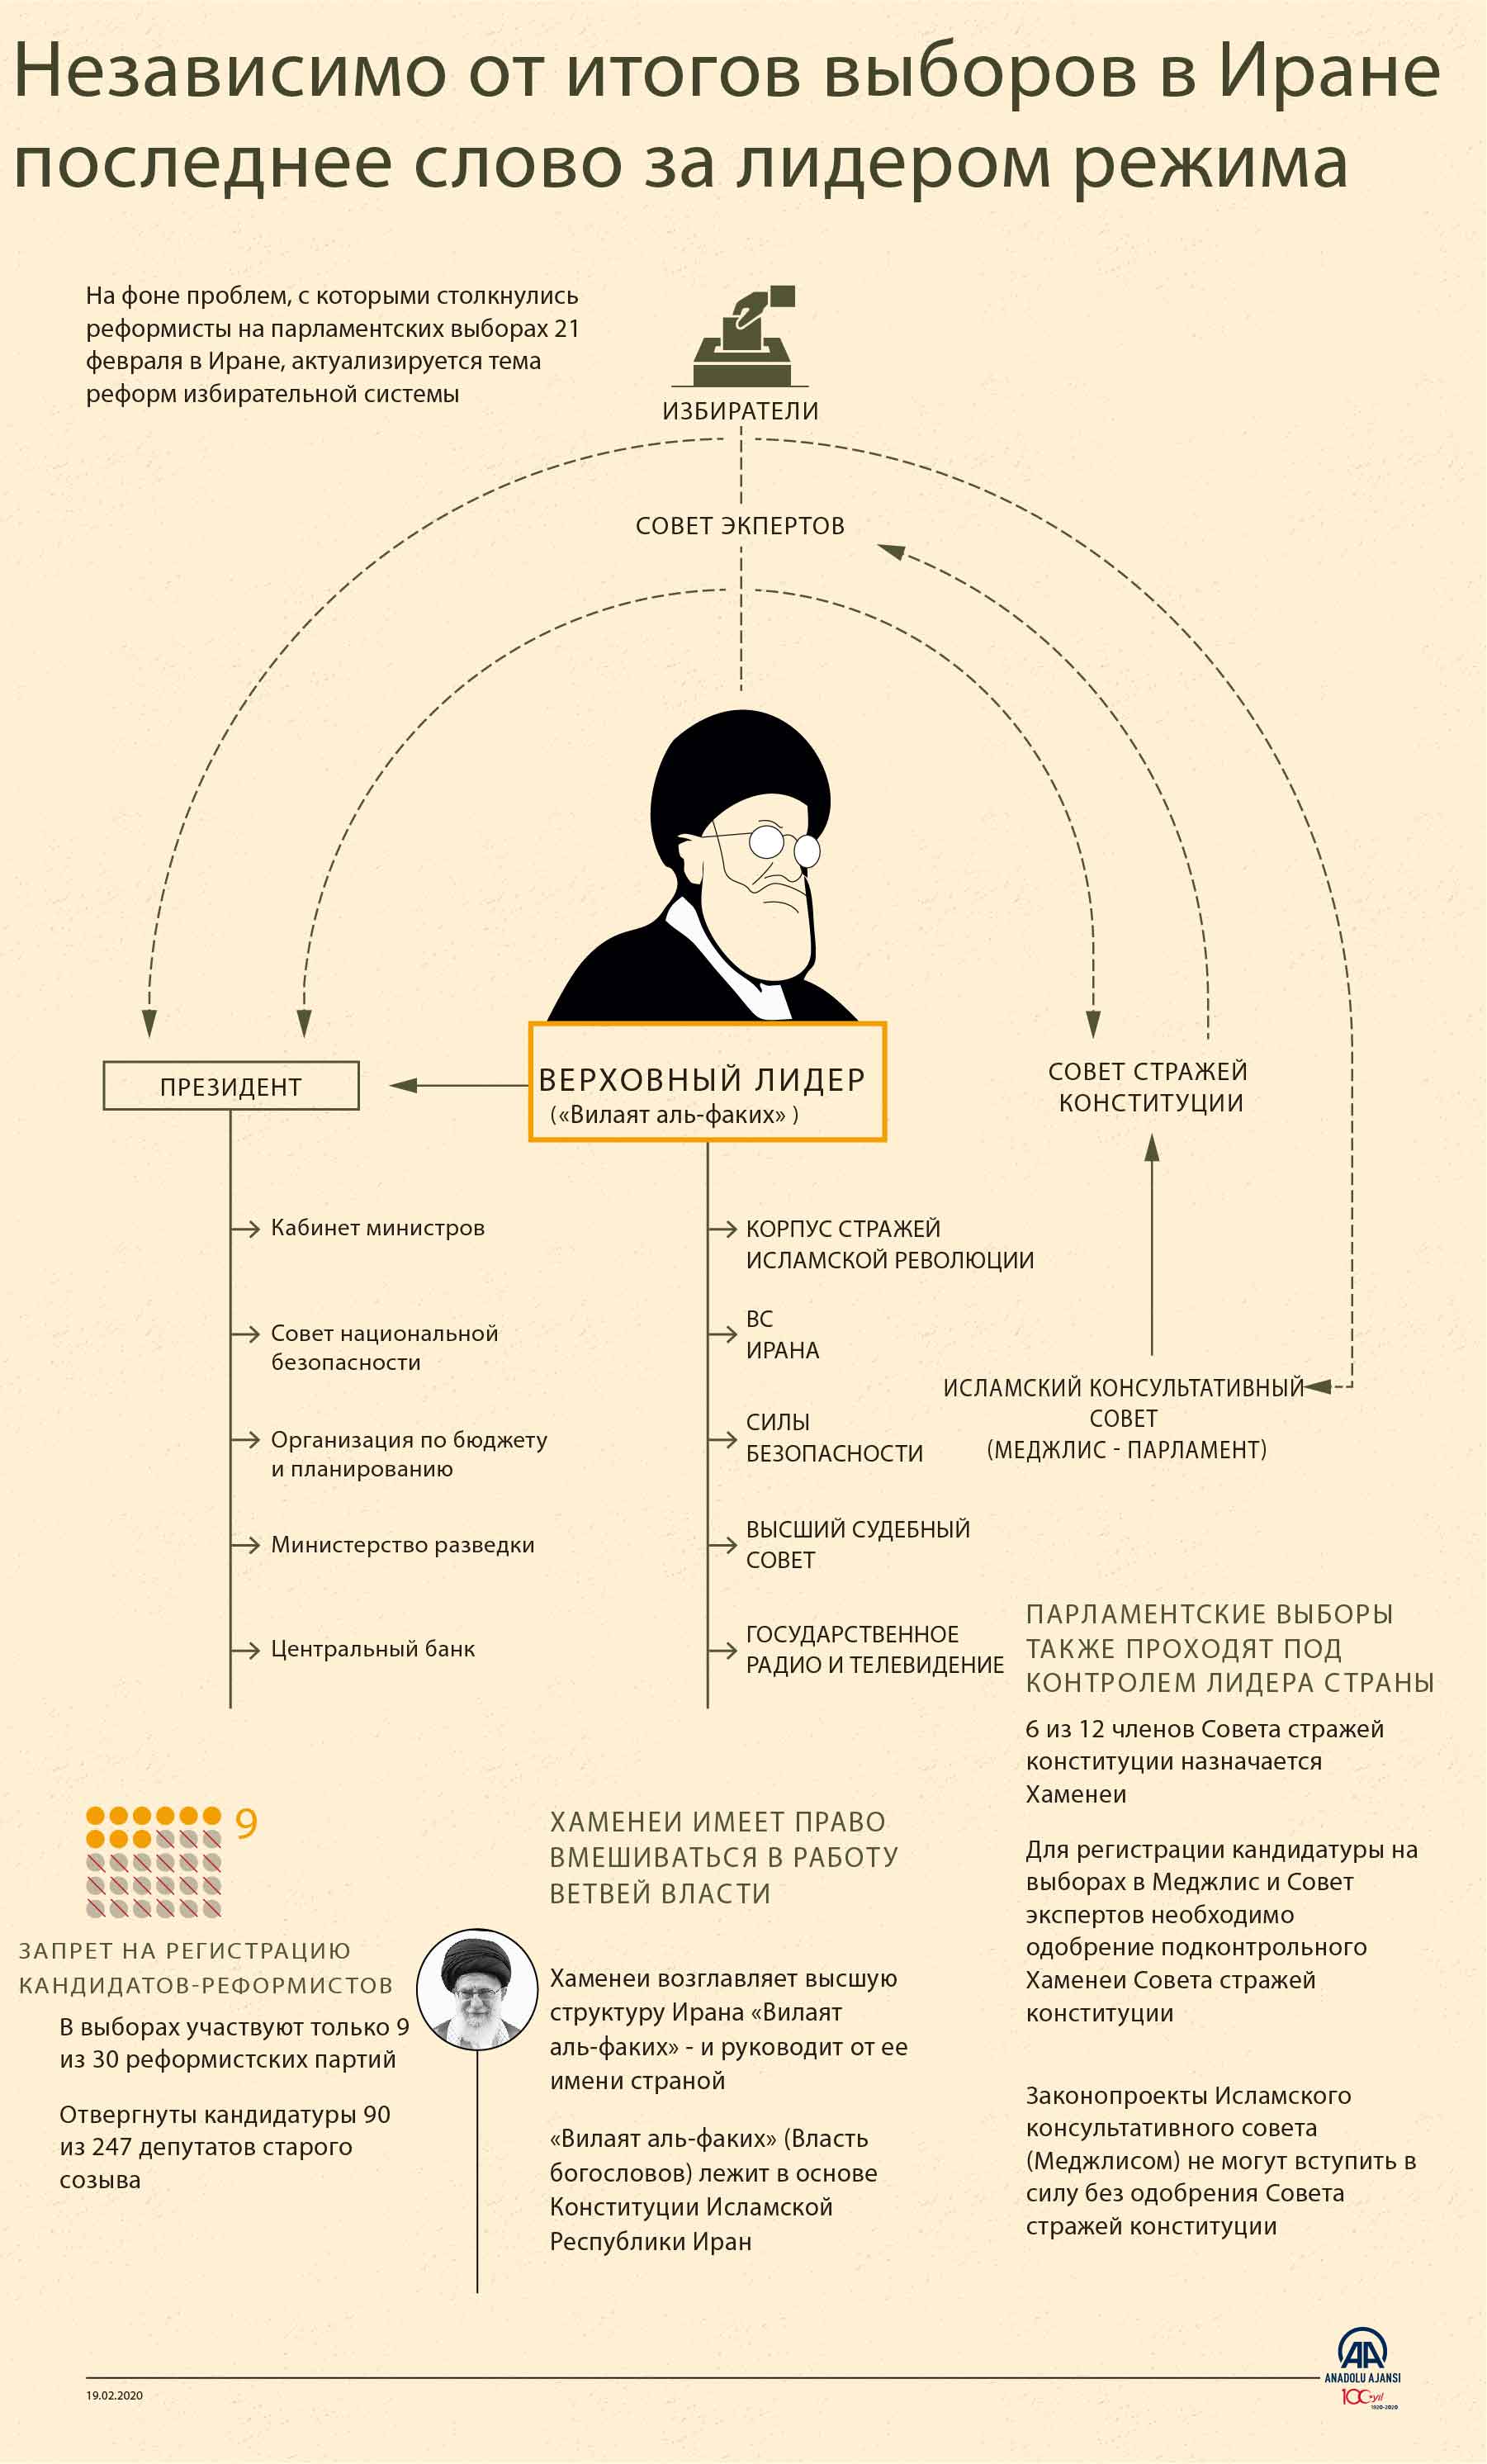 Хаменеи: Участие в выборах - религиозная обязанность